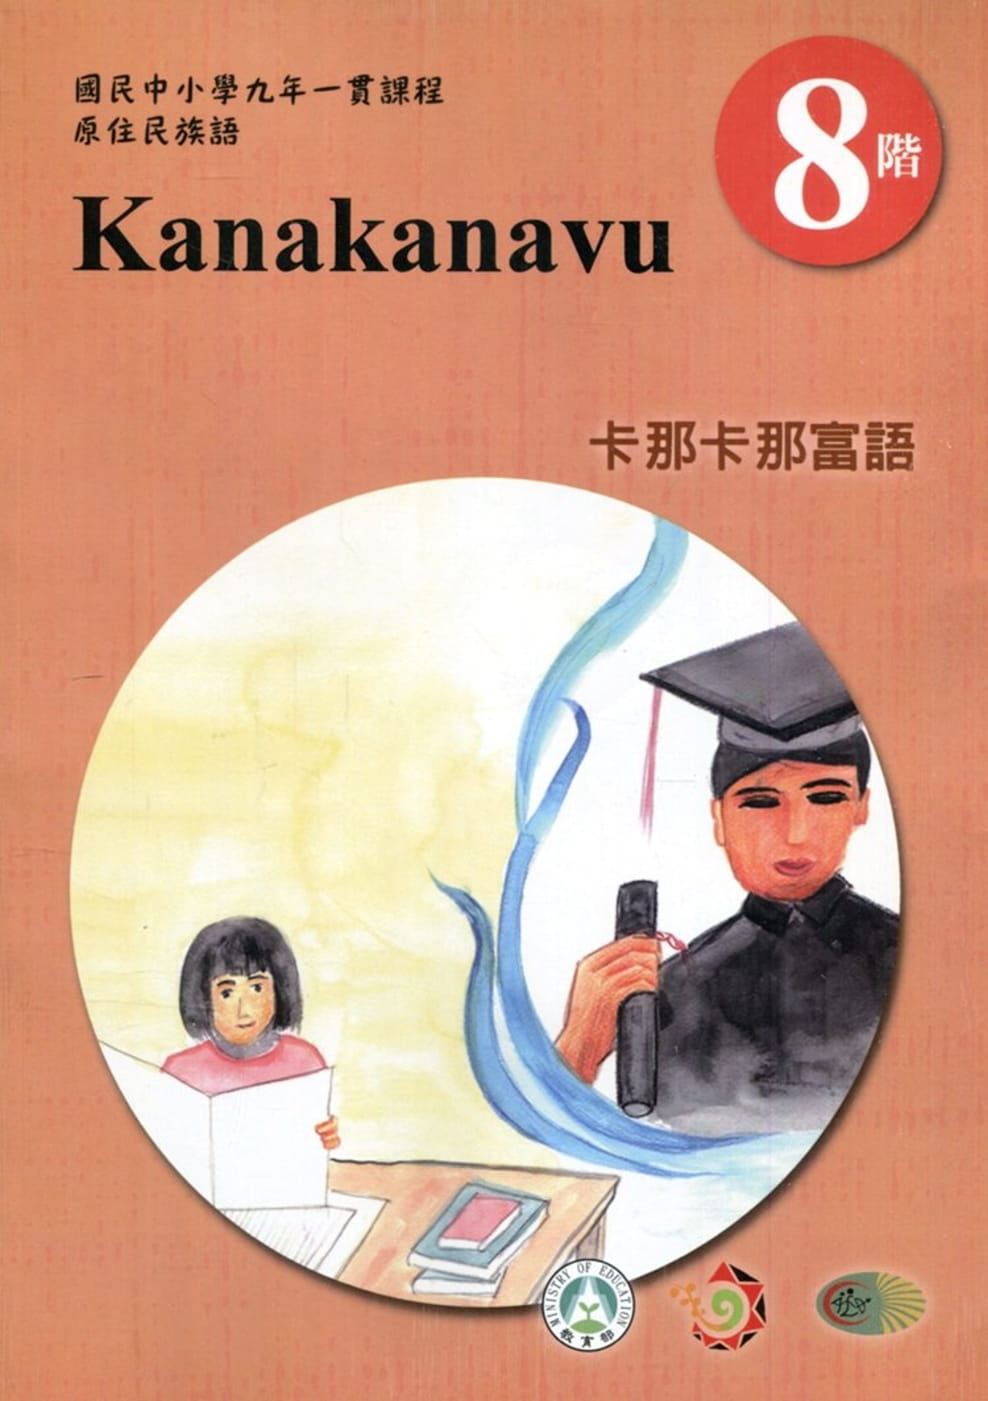 原住民族語卡那卡那富語第八階學習手冊(附光碟)2版